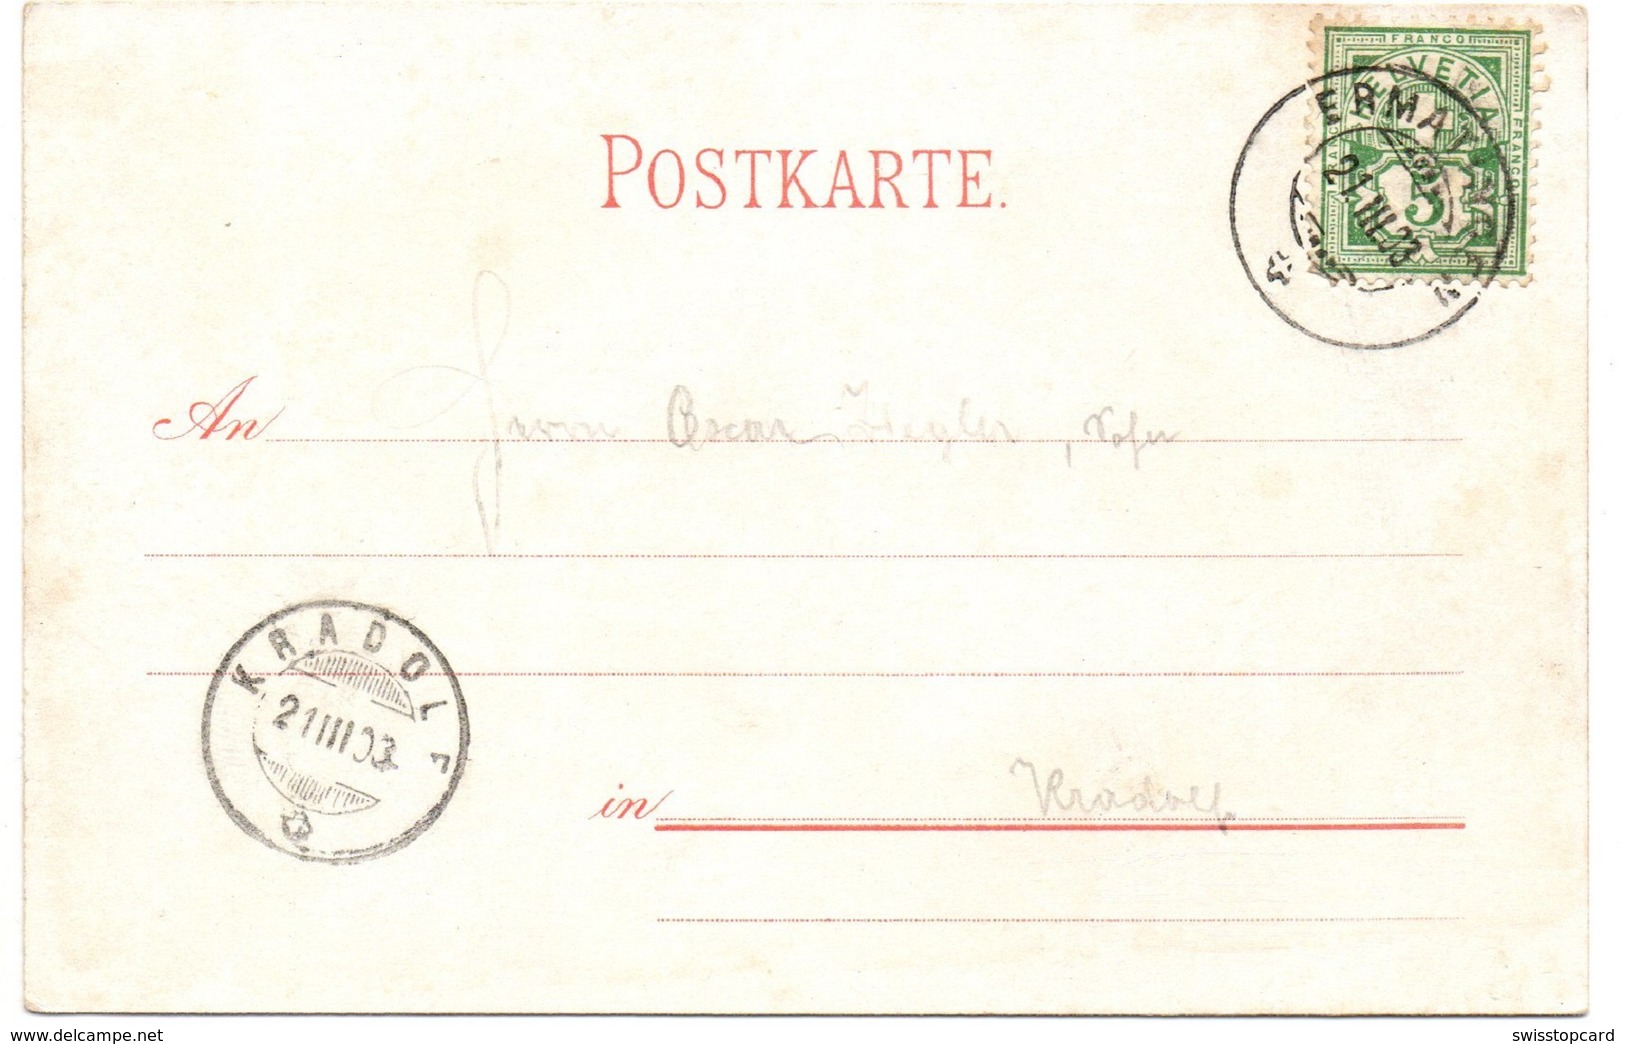 Gruss Aus ERMATINGEN Post & Telegraph Gel. 1903 N. Kradolf - Ermatingen